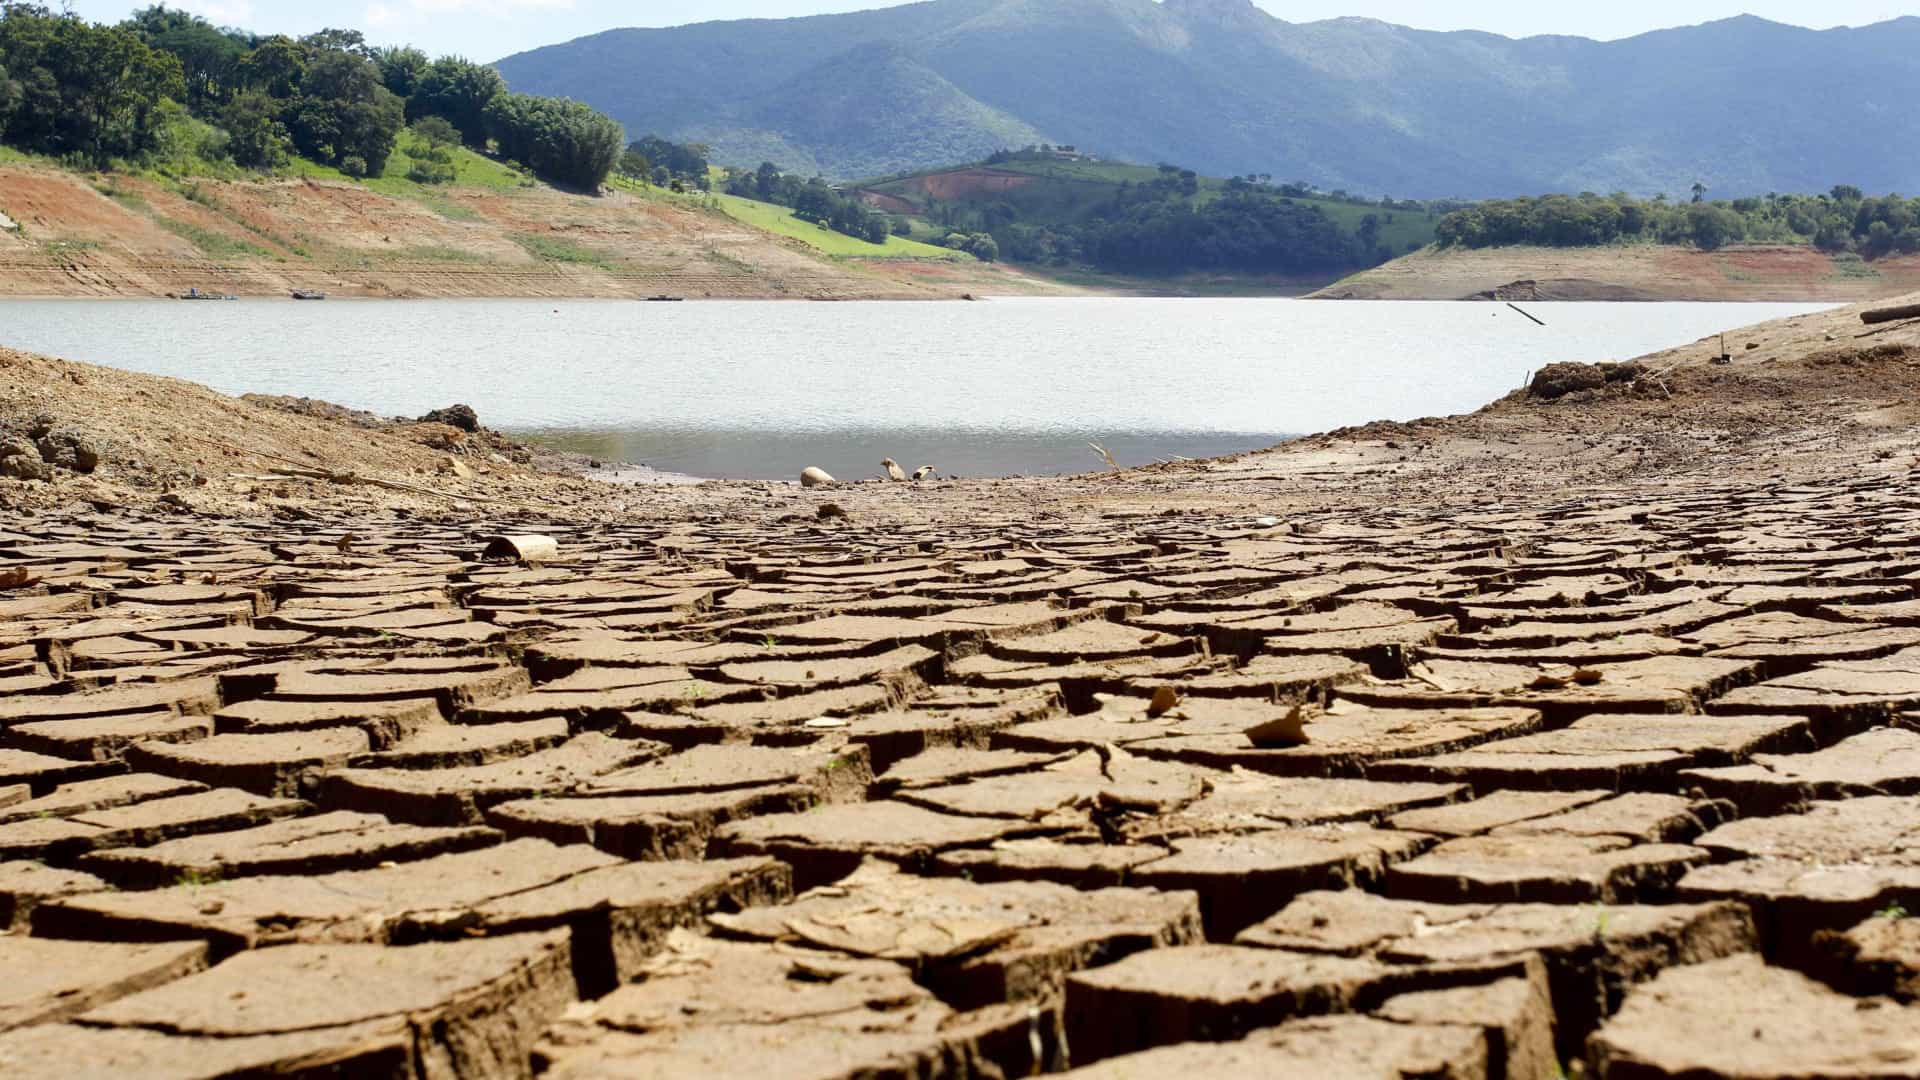 Chuvas abaixo da média tiram R$ 80 bi por ano do PIB brasileiro